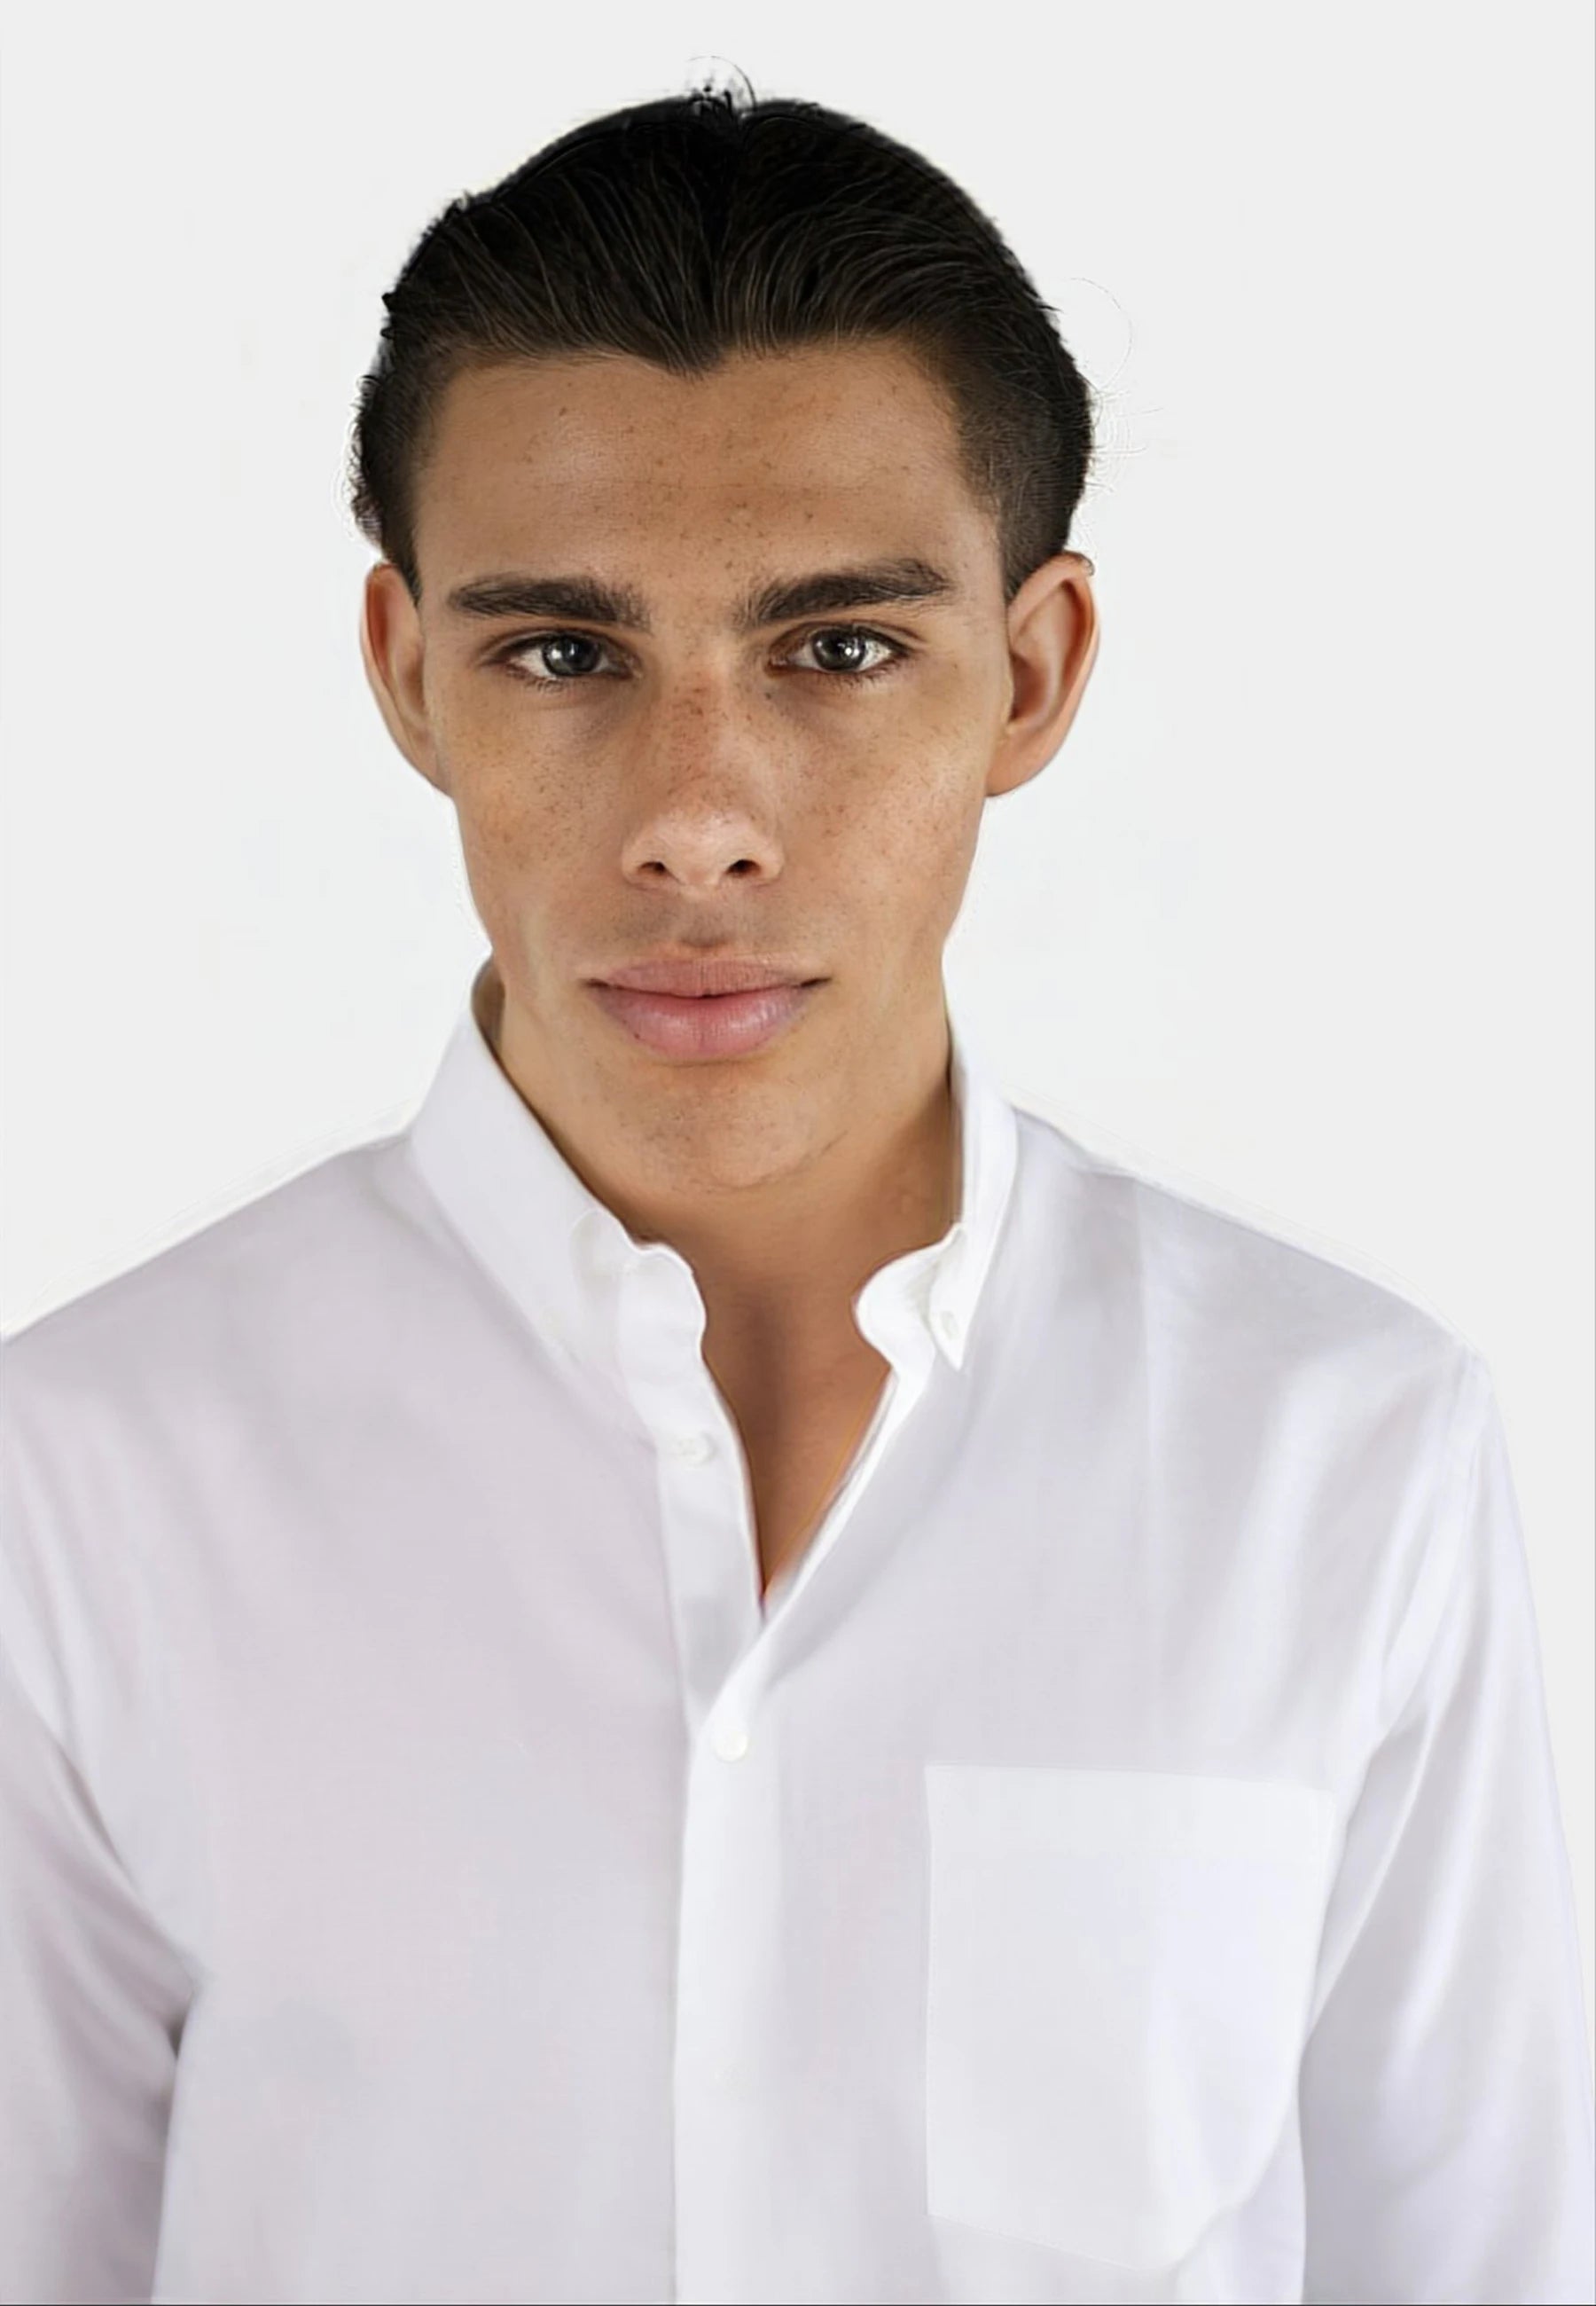 Mika straight shirt - White